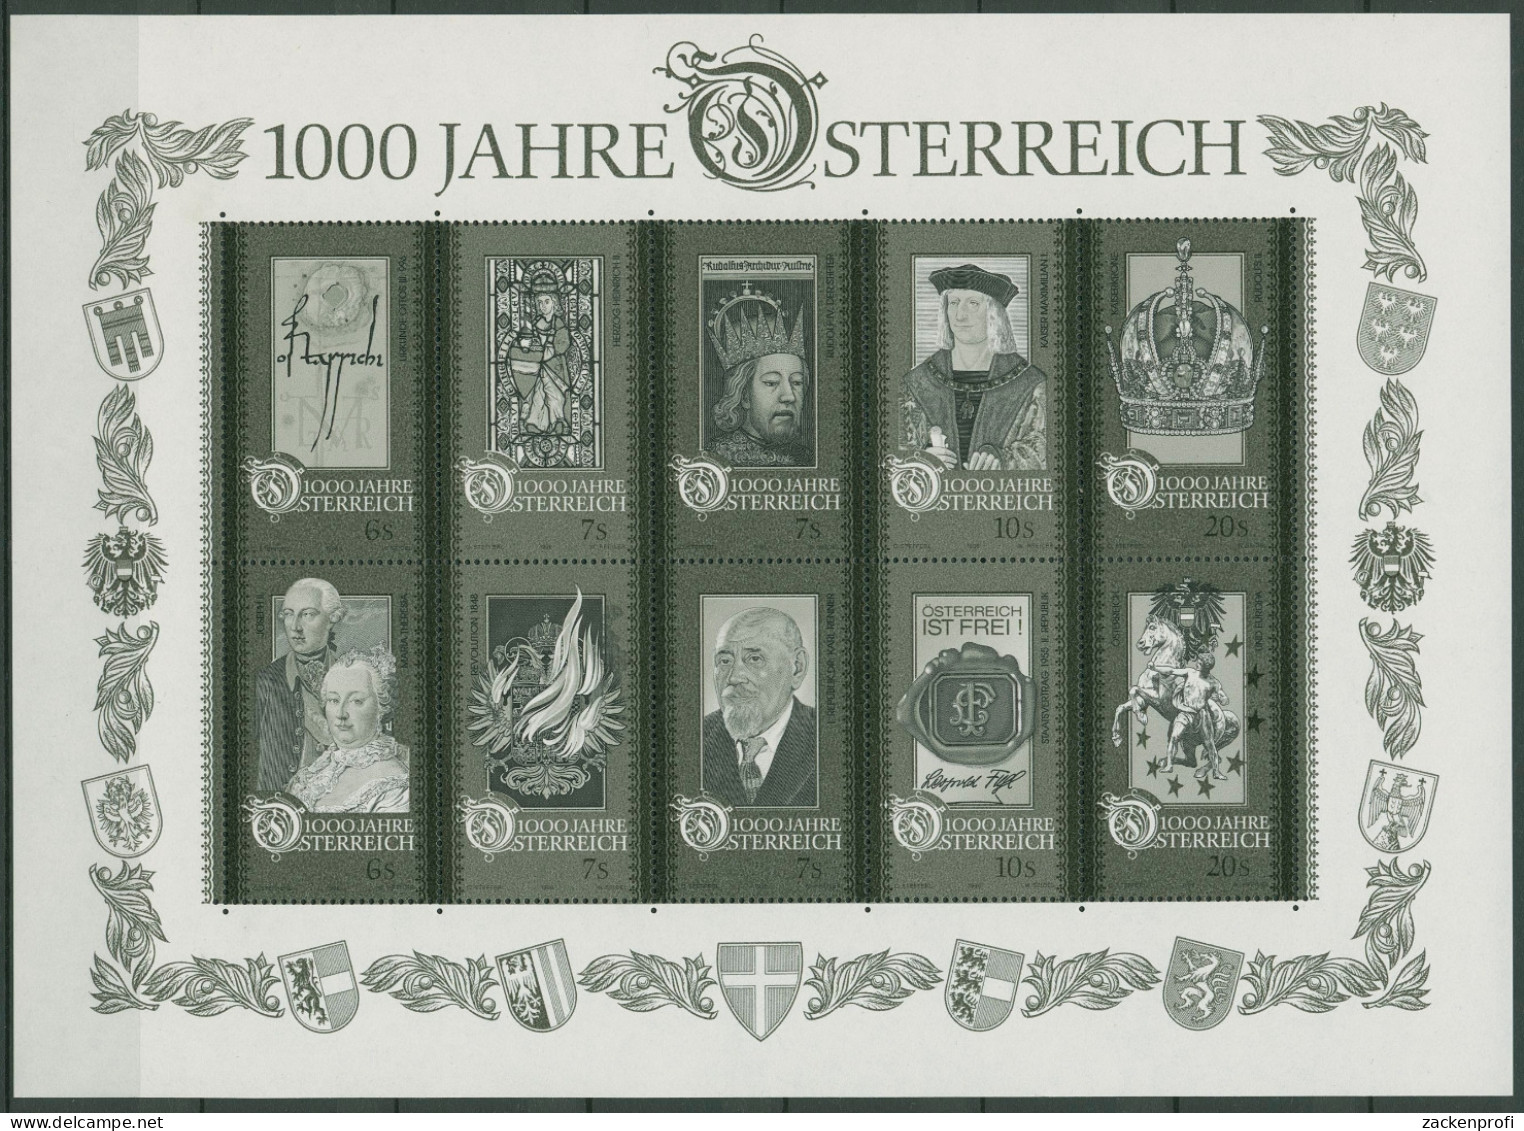 Österreich 1996 1000 Jahre Österreich Schwarzdruck Block 12 S (SG14743) - Blocks & Sheetlets & Panes